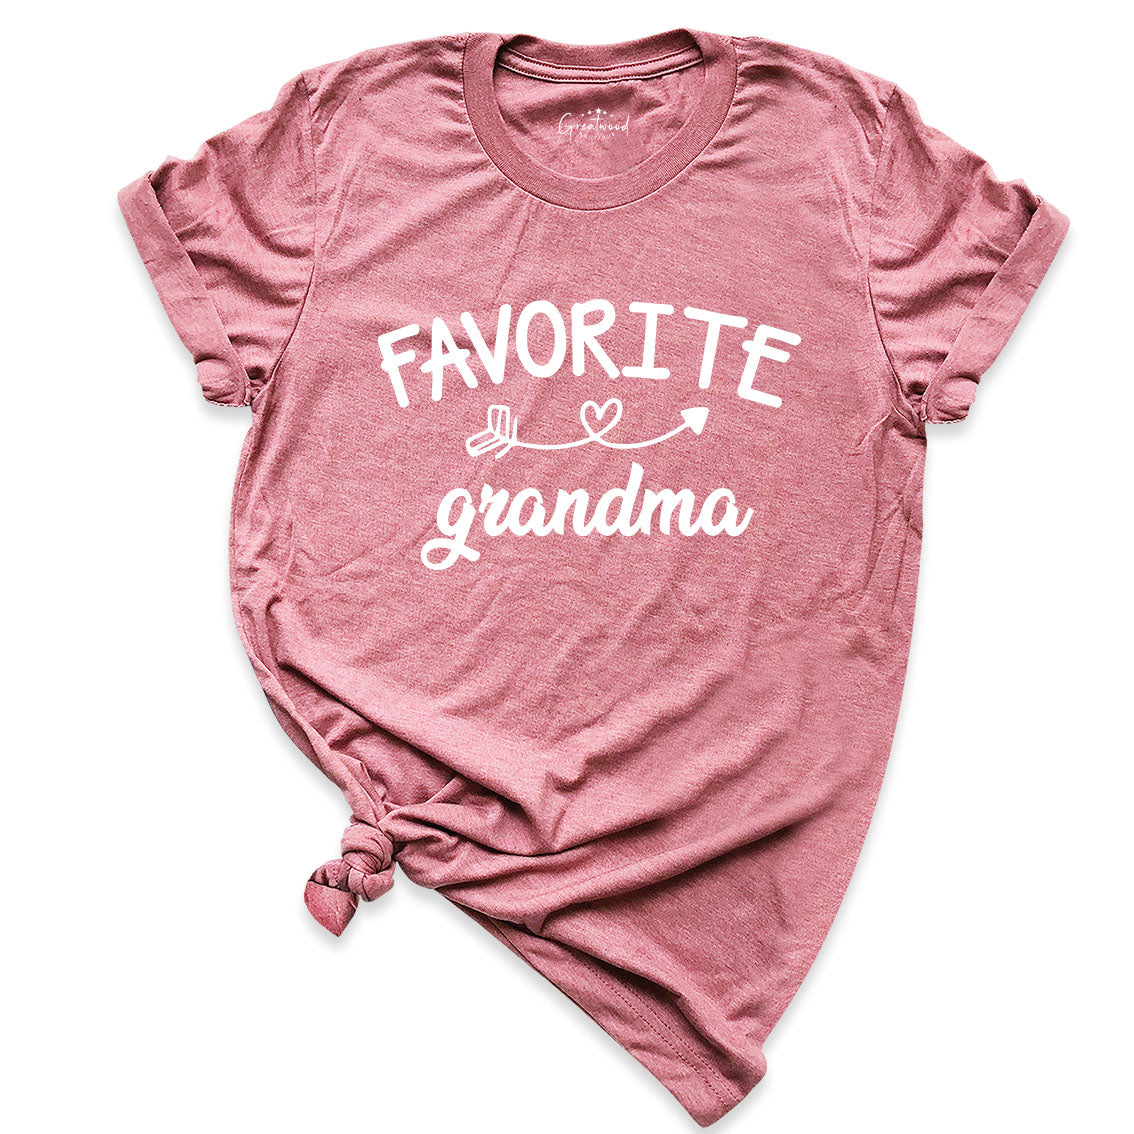 Favorite Grandma Shirt